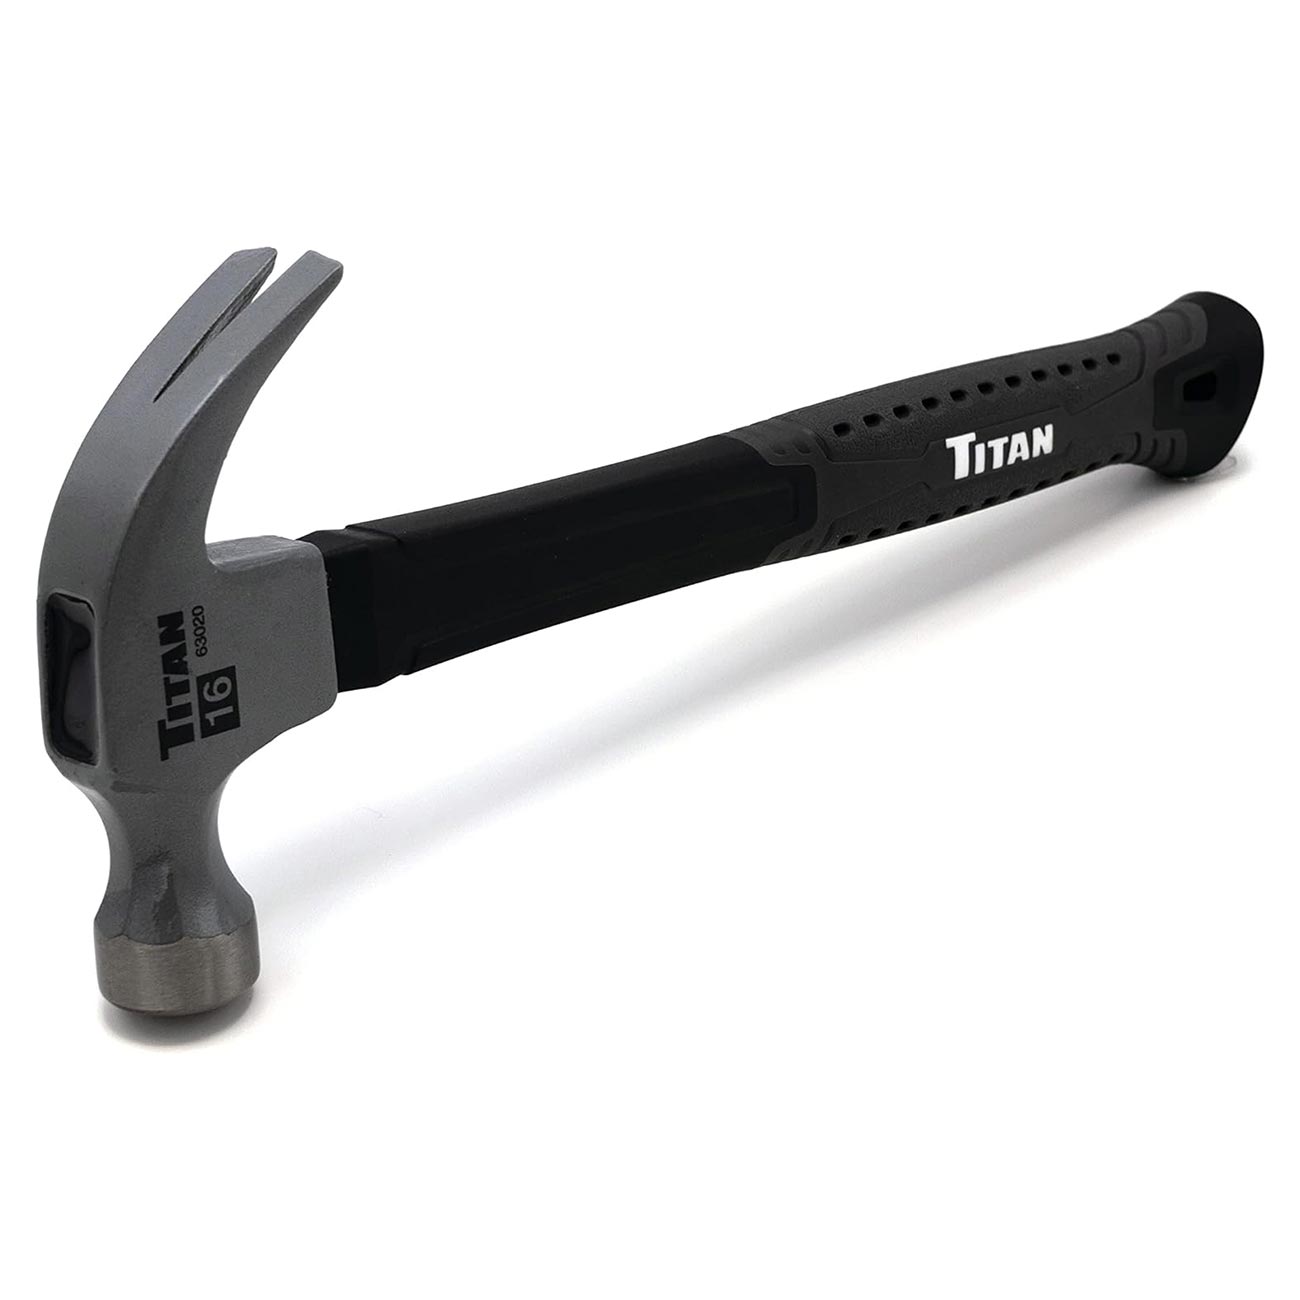 Titan 16 oz Claw Hammer